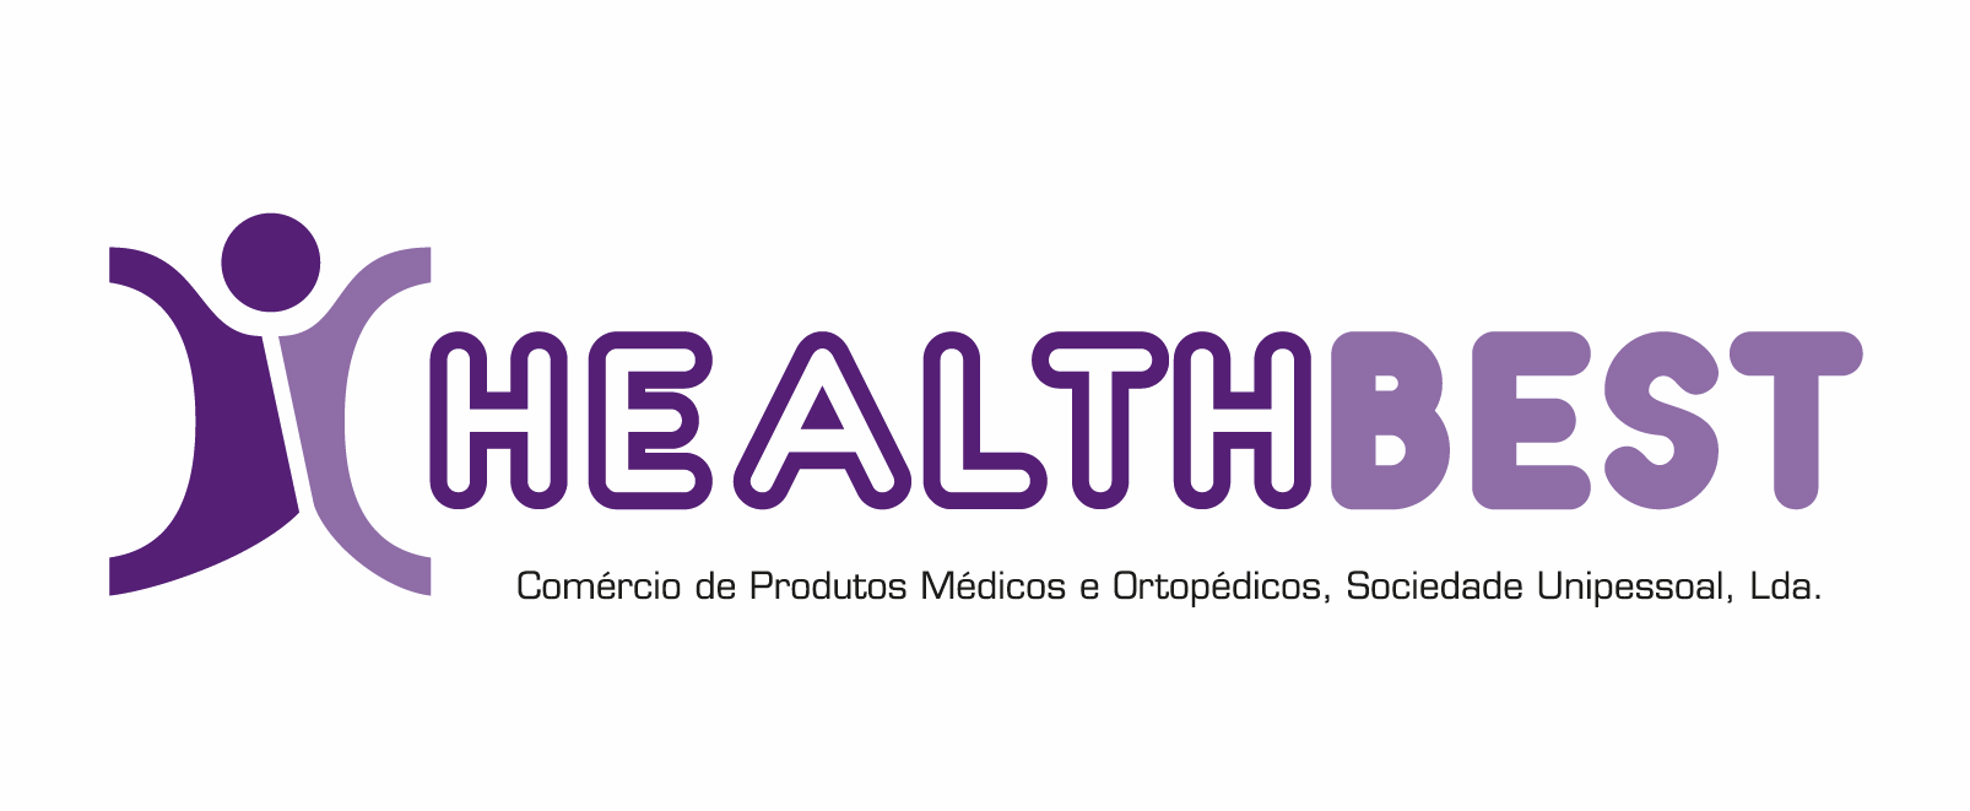 Healthbest– HEALTHBEST